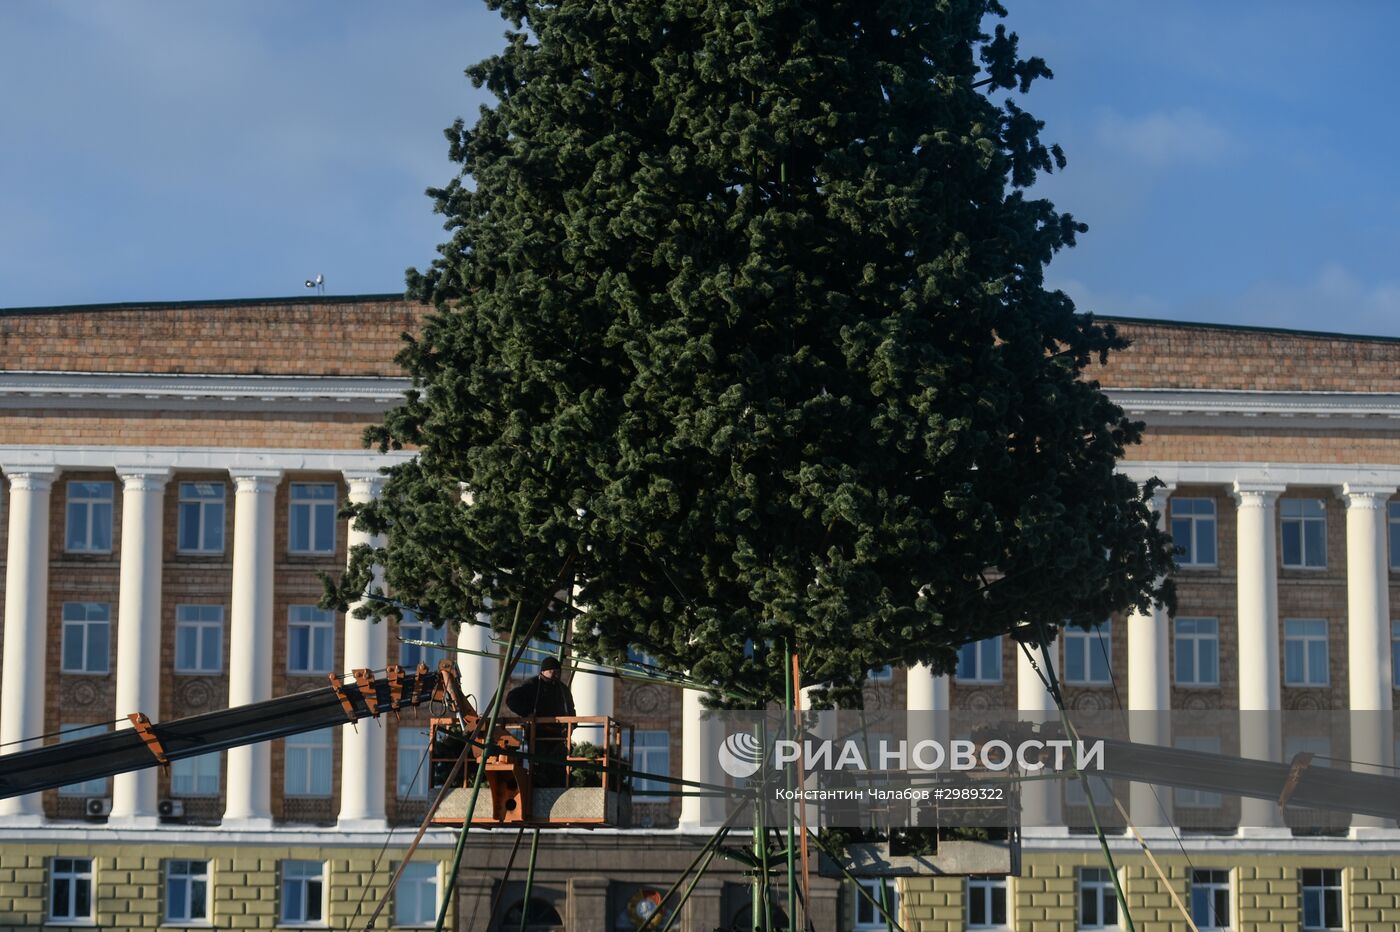 Установка главной новогодней елки в Великом Новгороде